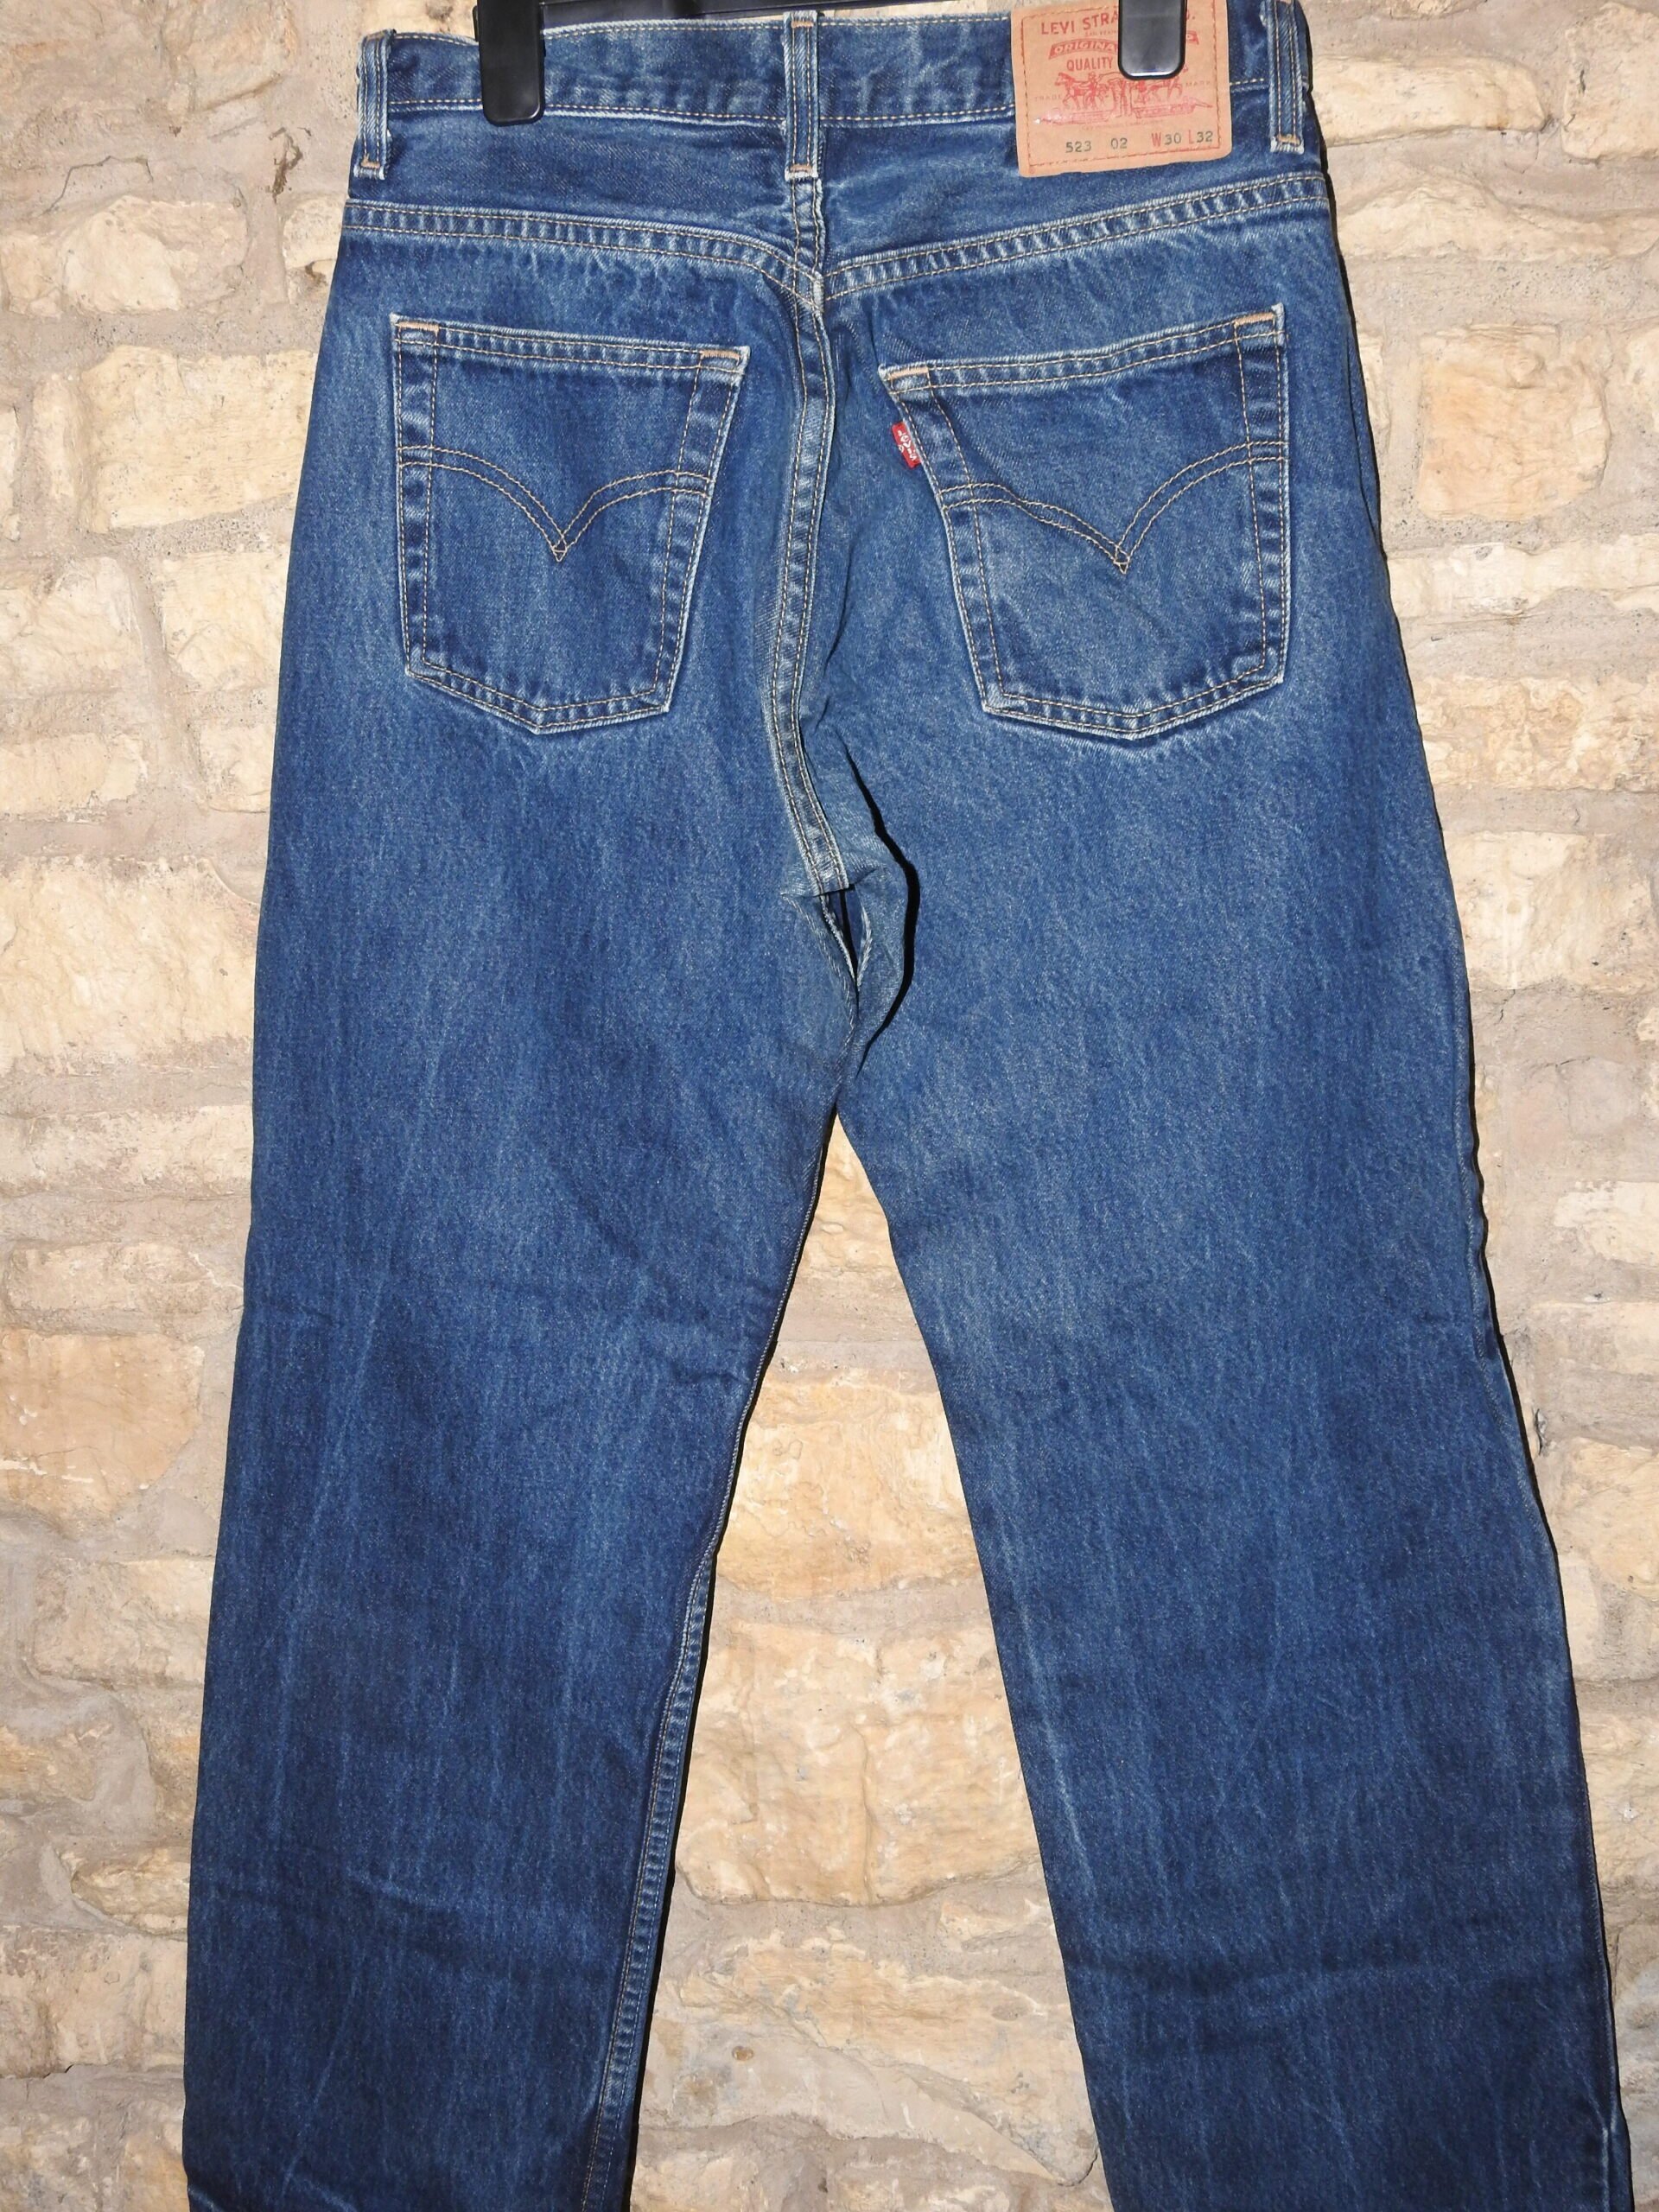 Levi's 523 Blue Jeans